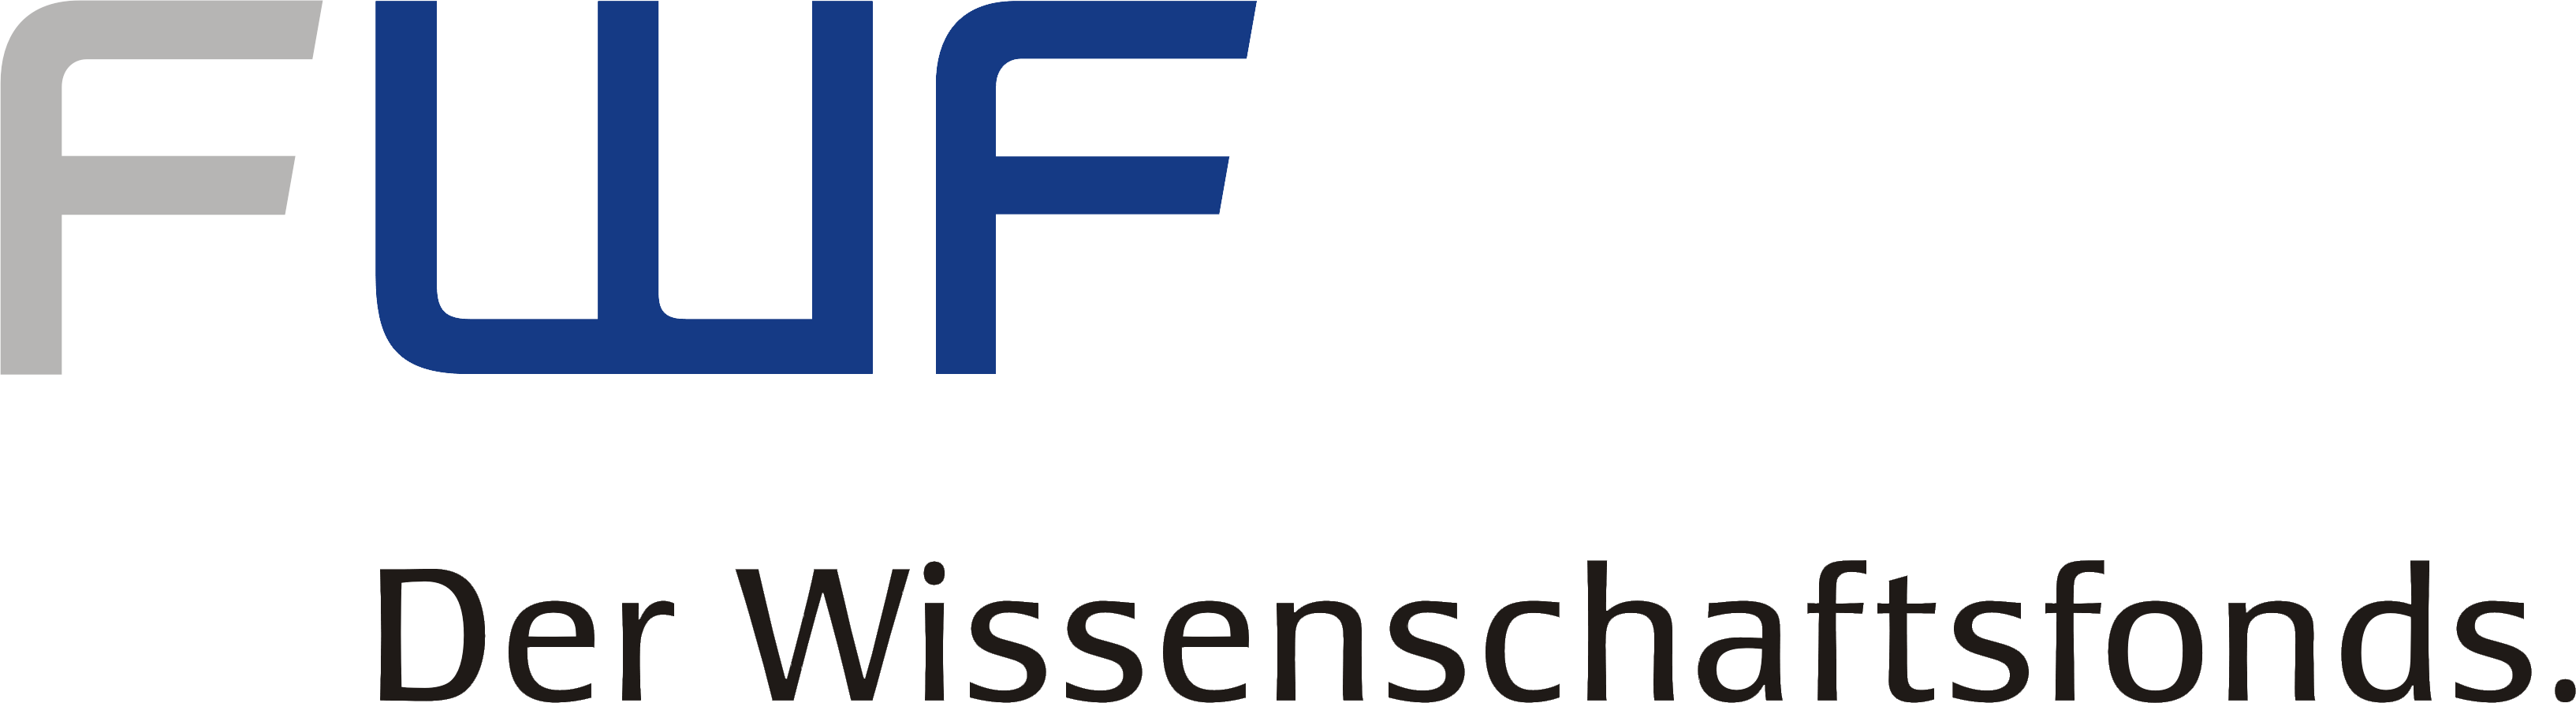 FWF Austrian Science Fund